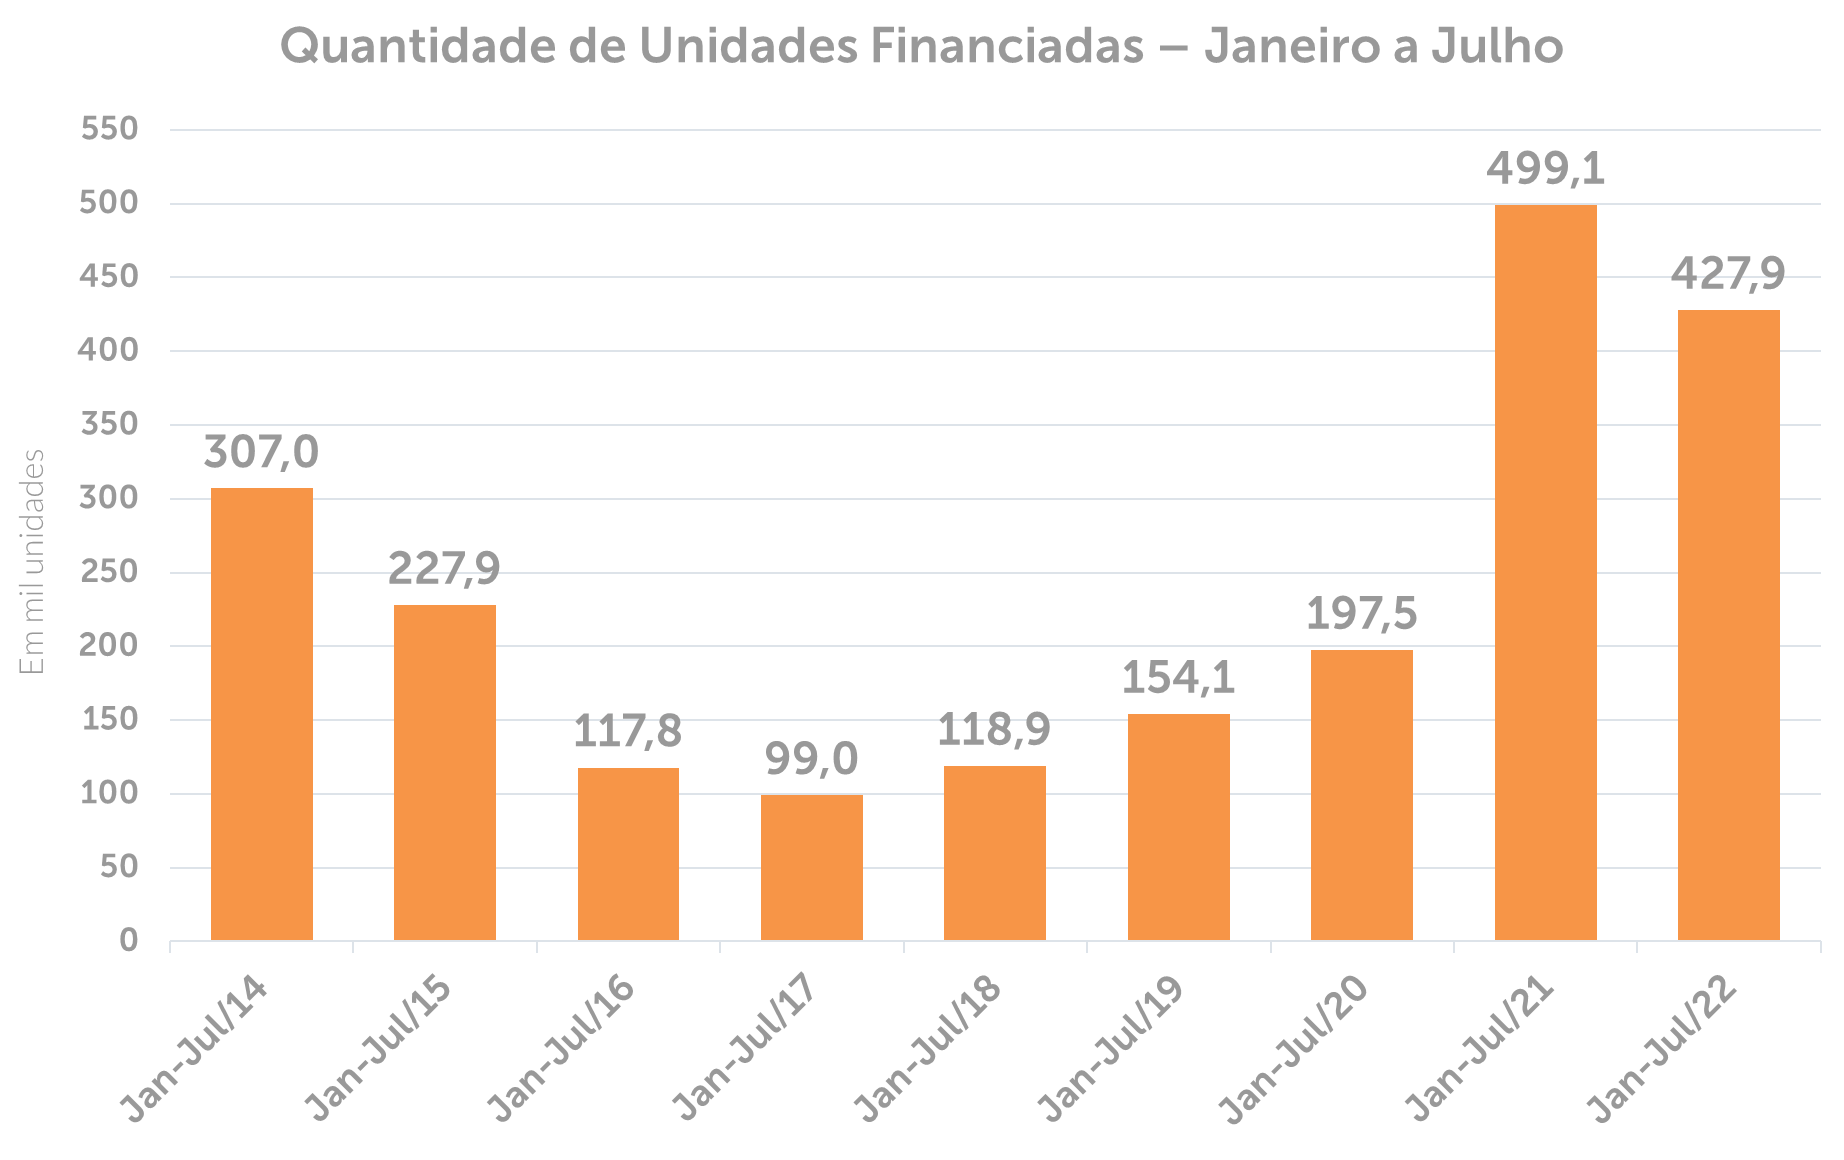 Quantidade de Unidades Financiadas de Janeiro a Julho